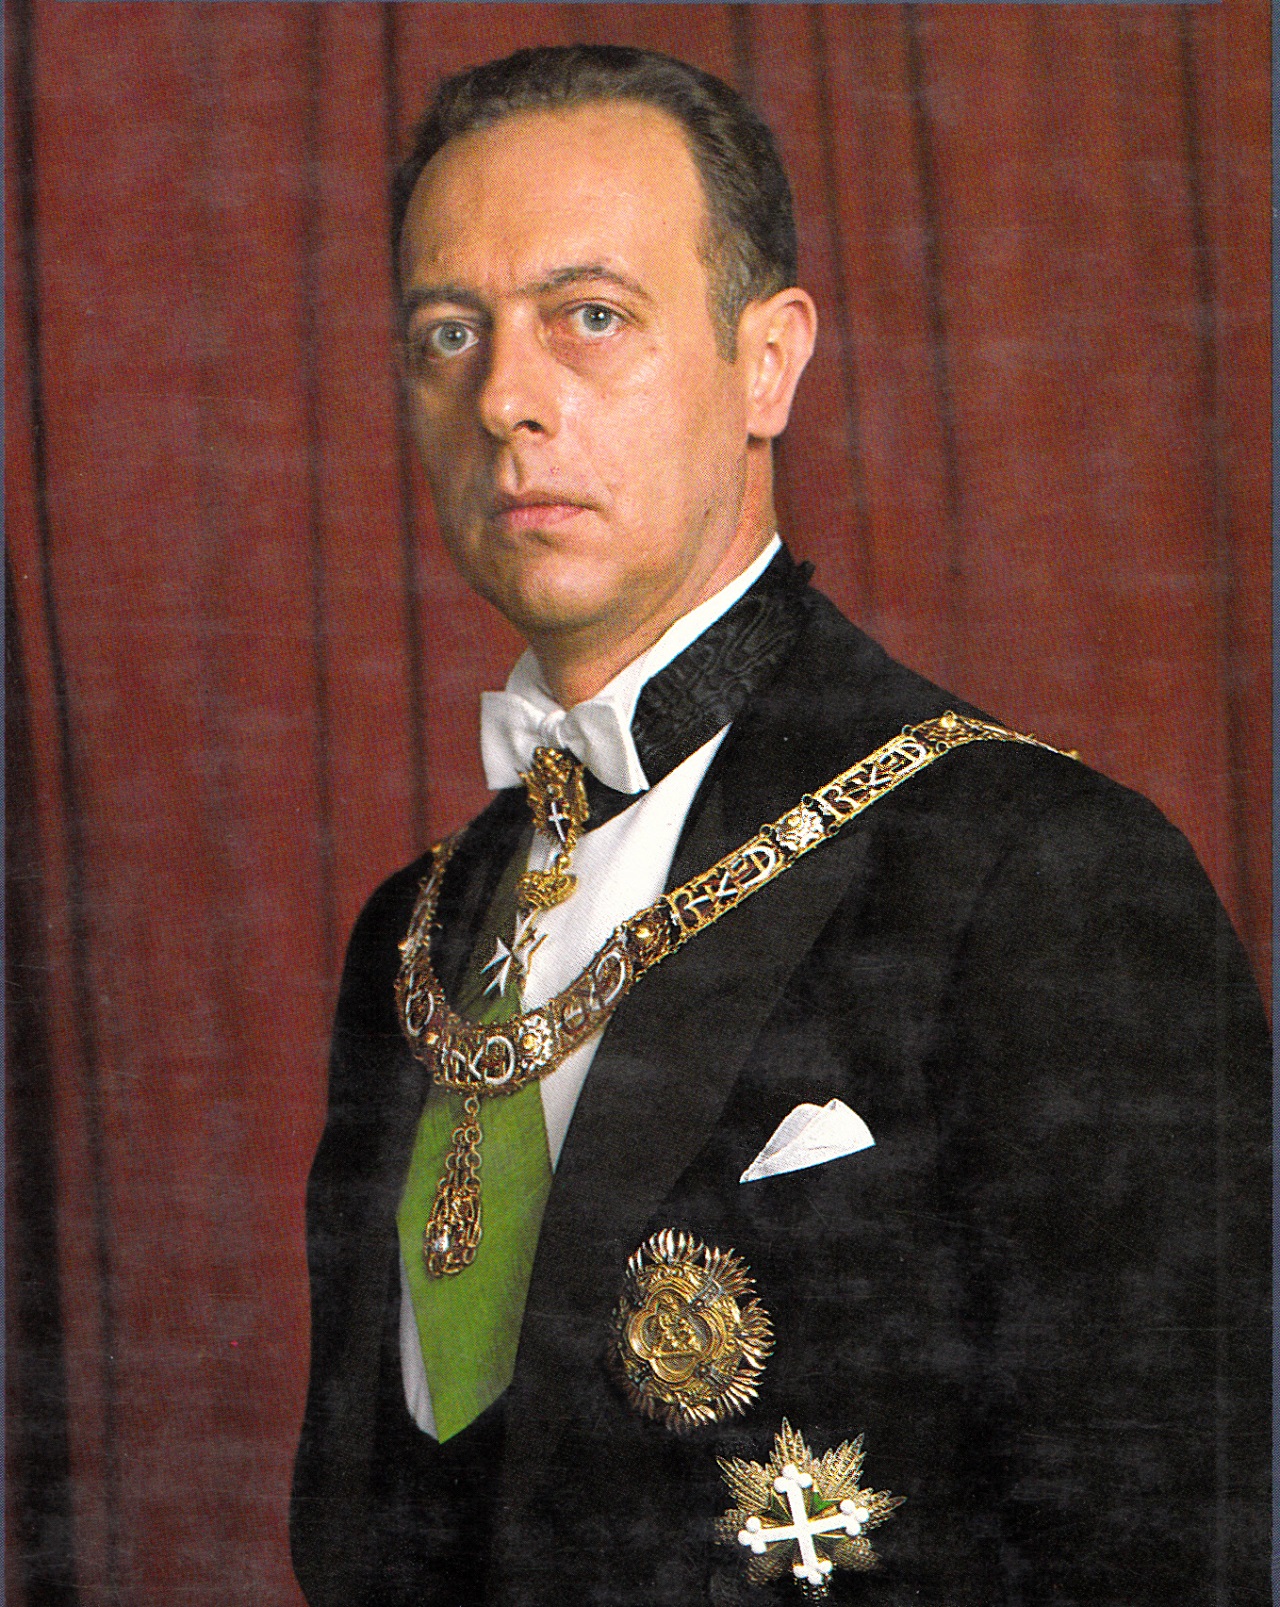 È morto il principe Amedeo di Savoia. Il duca d'Aosta aveva 77 anni